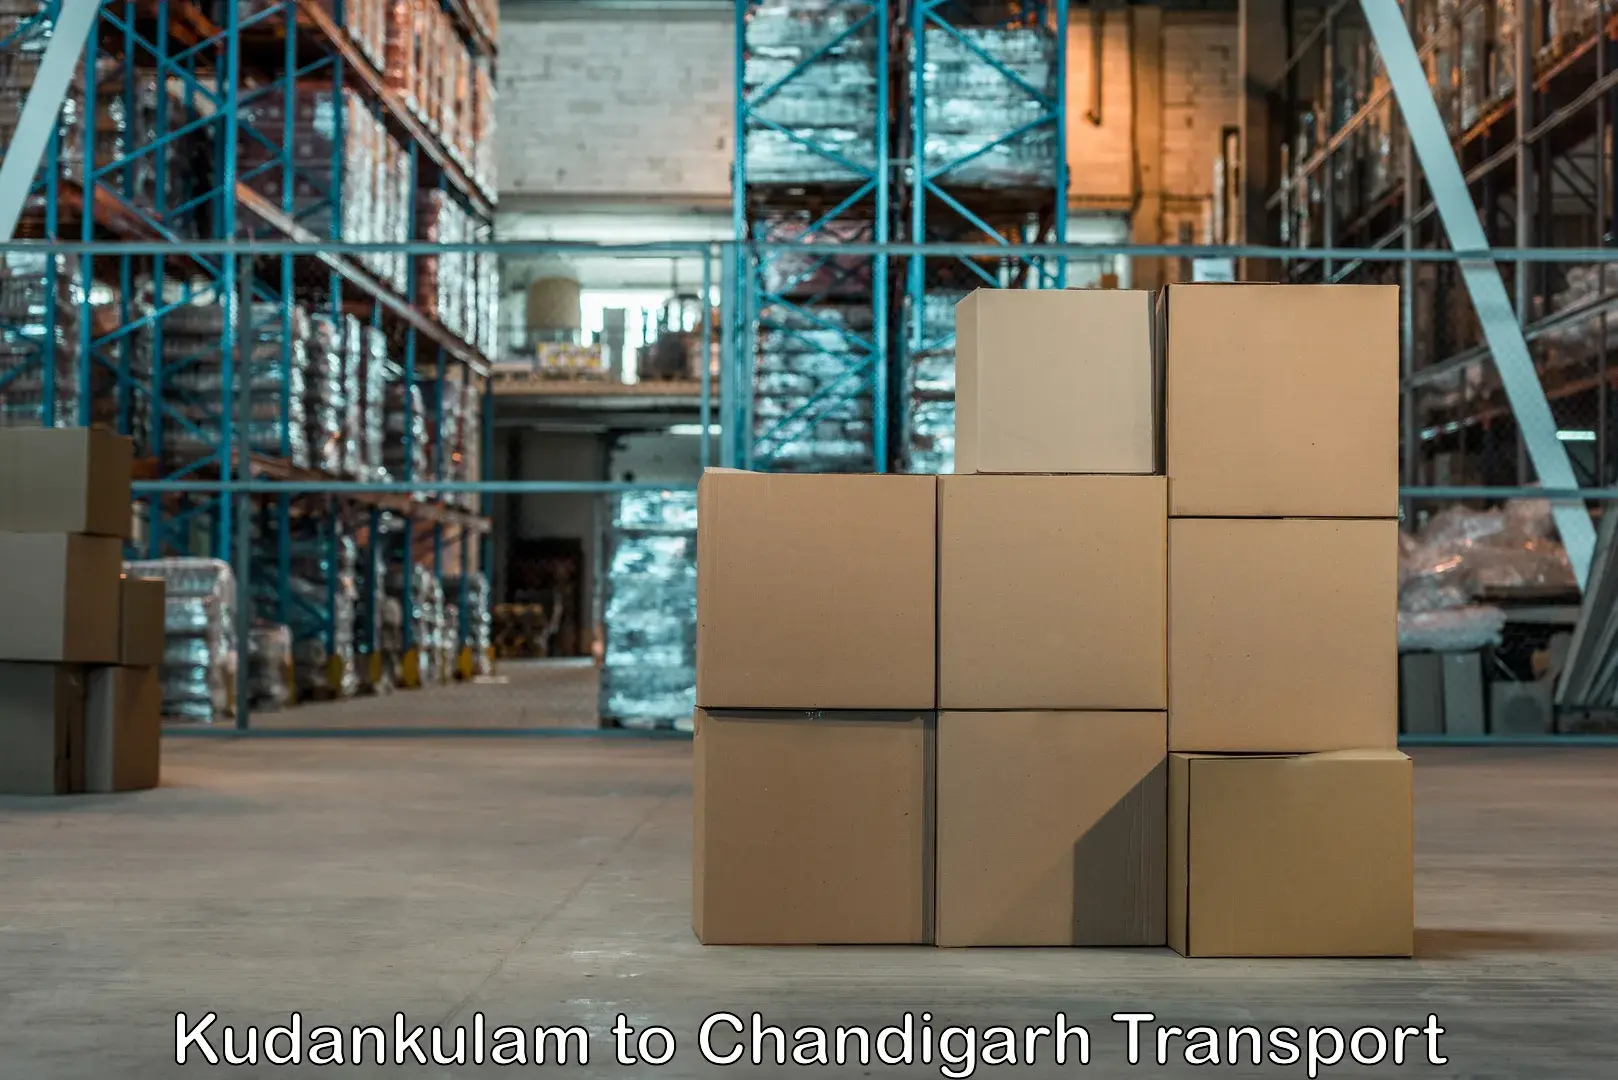 Truck transport companies in India Kudankulam to Chandigarh